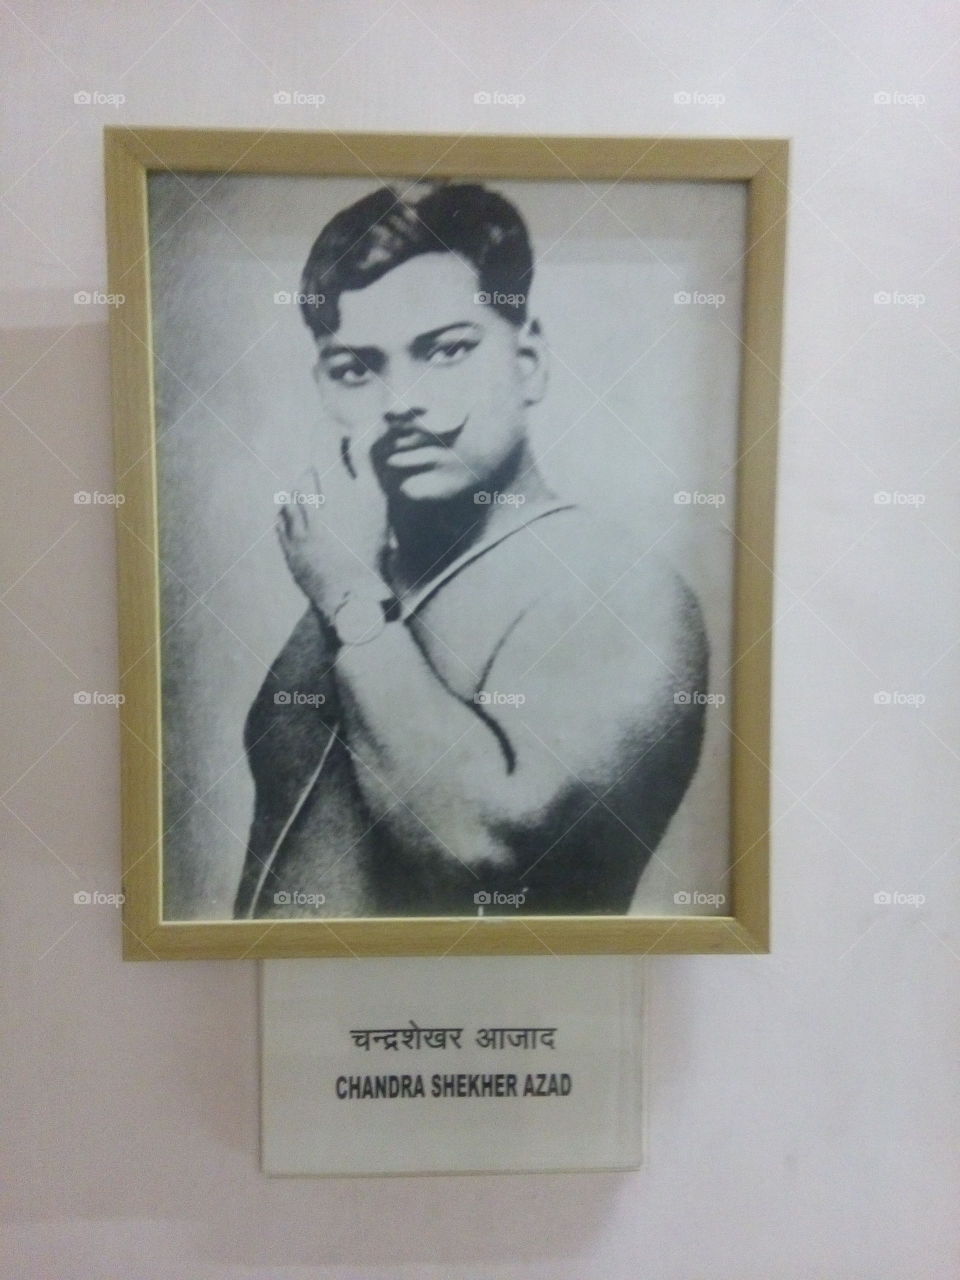 Chandra shekhar Azad